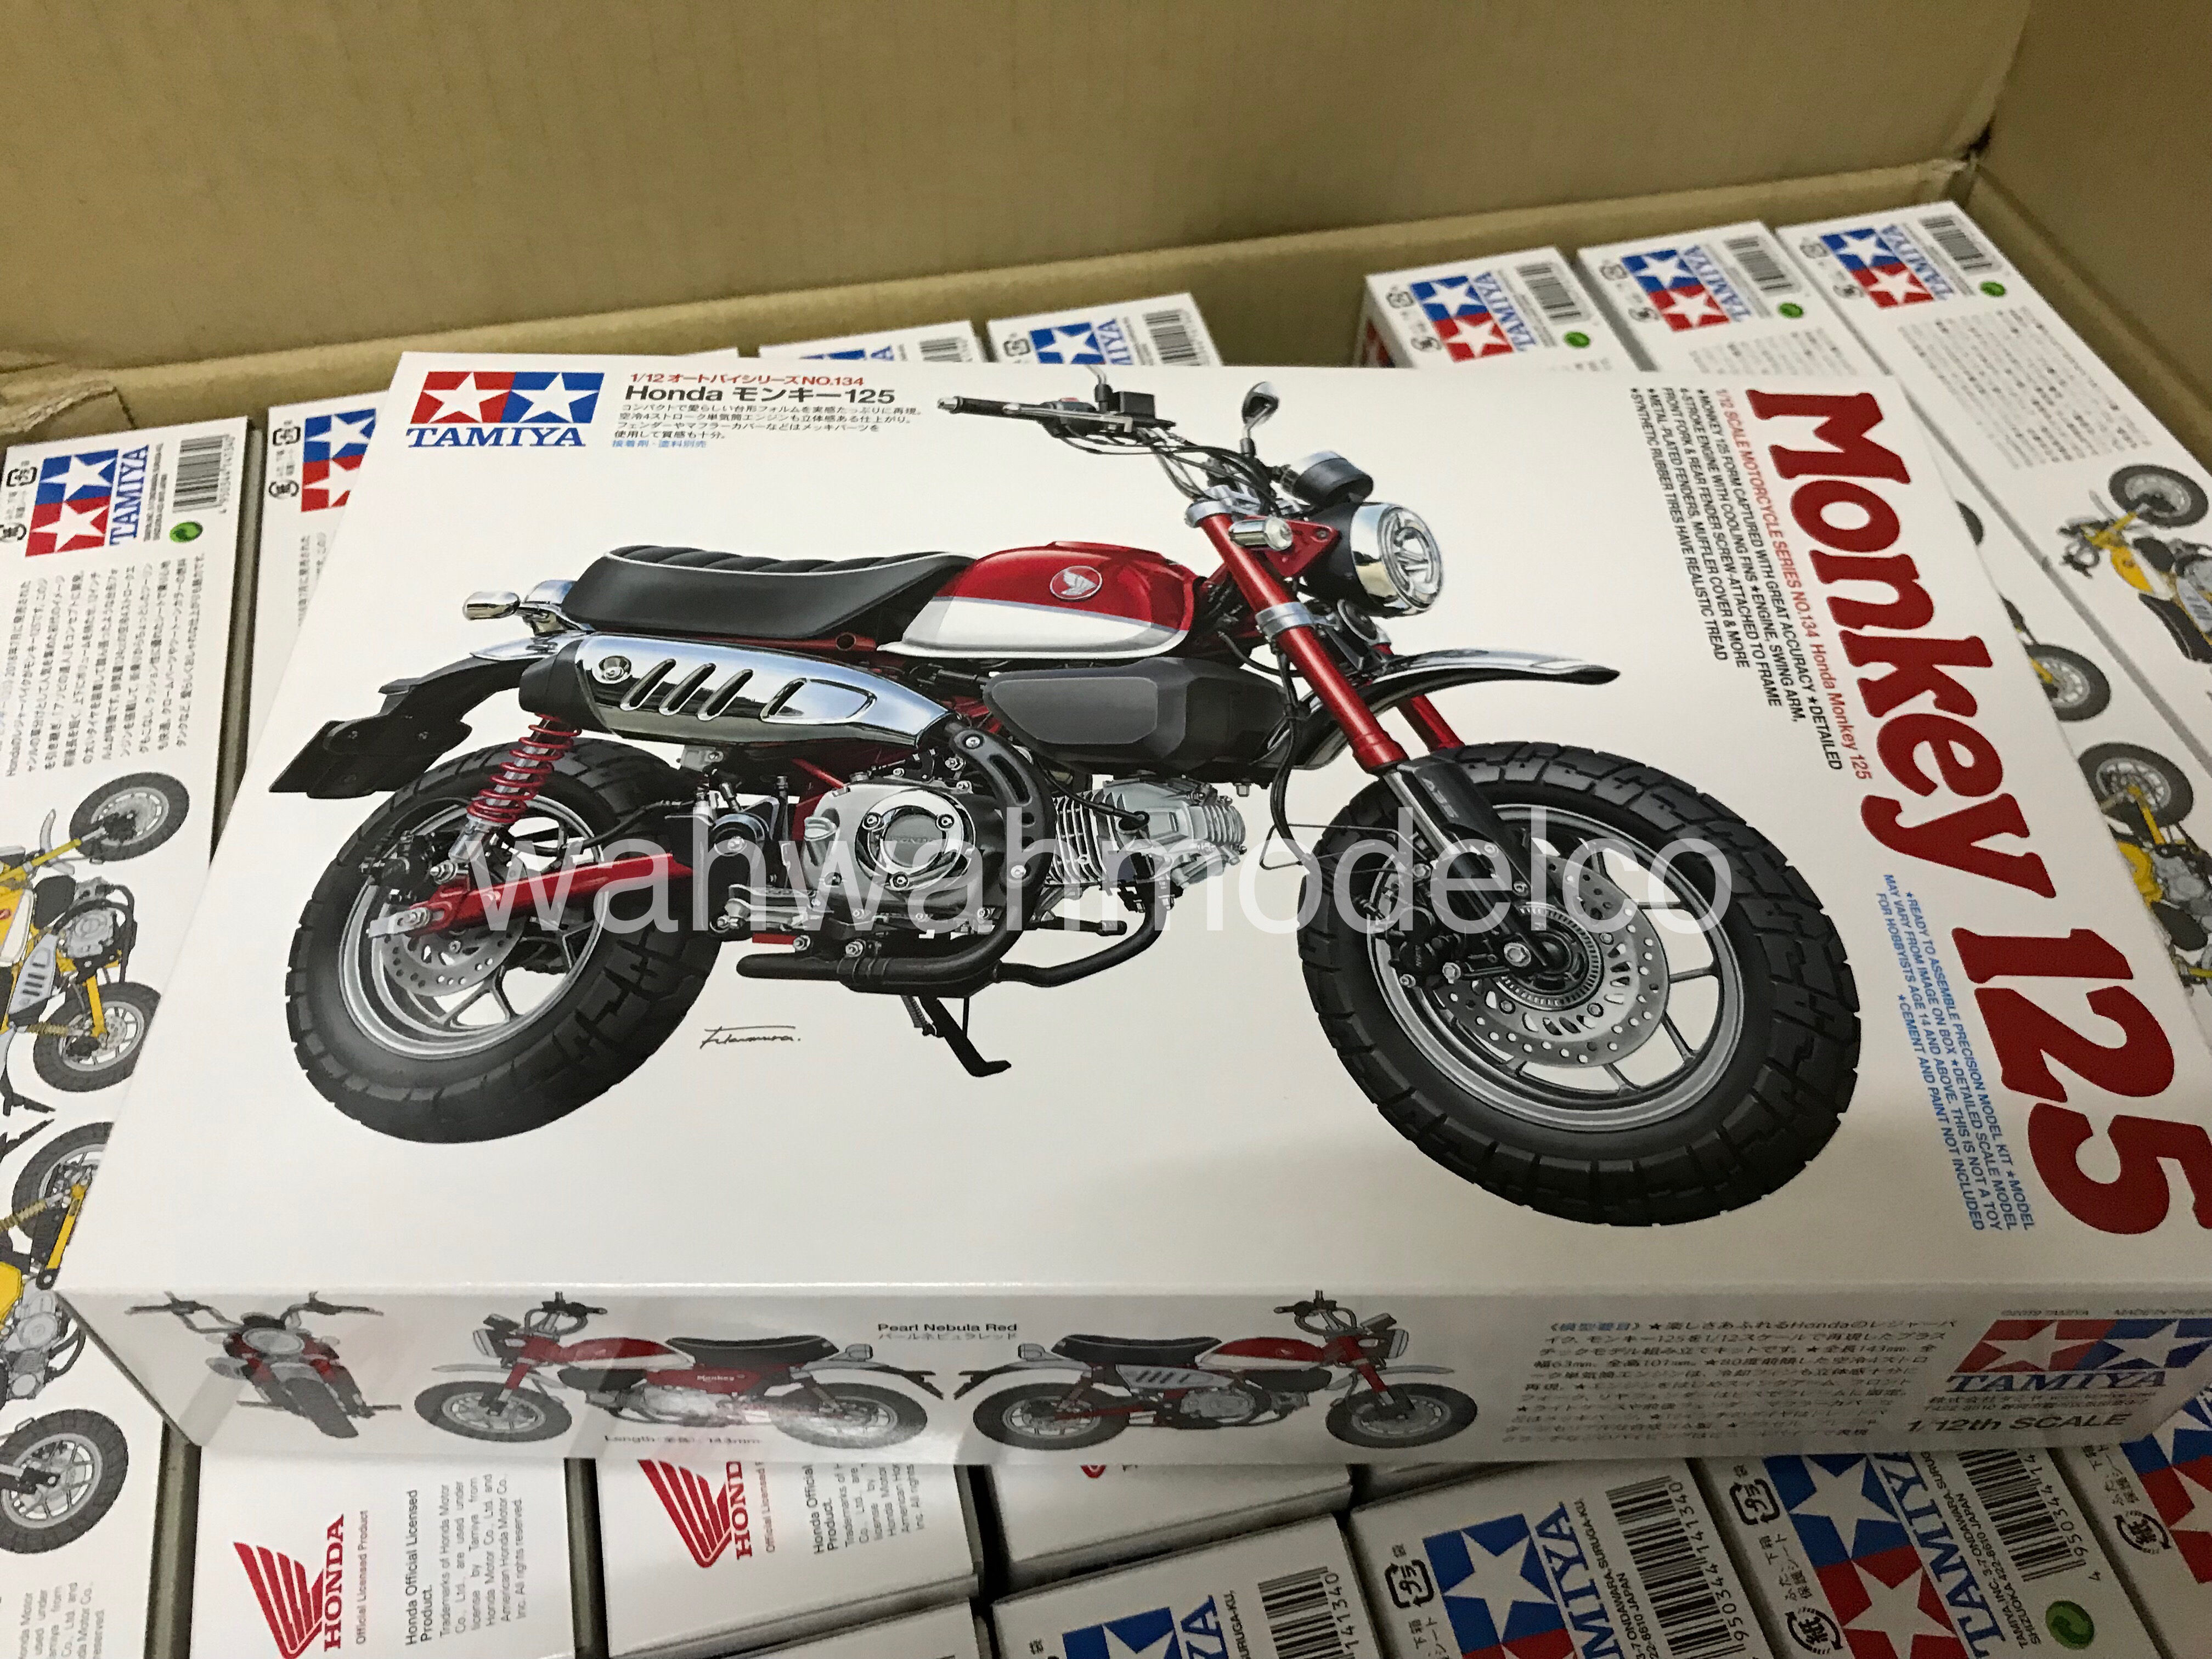 Tamiya 1/12 motorcycle series No.134 Honda Monkey 125 Model Car 14134 